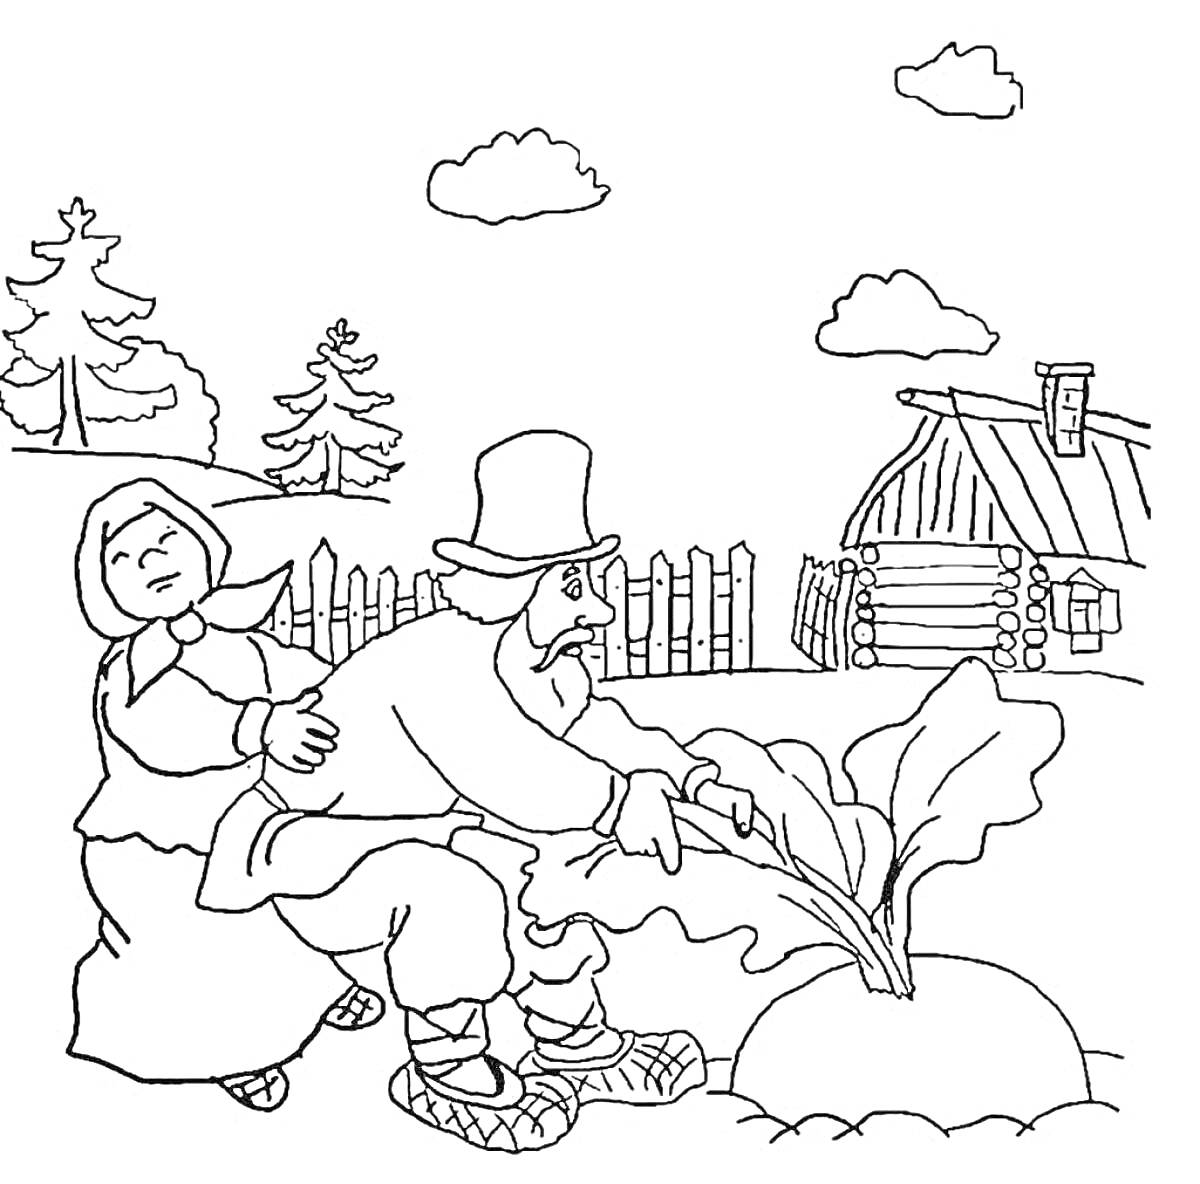 Раскраска Старик и старуха тянут репку возле дома, забор, деревья, облака